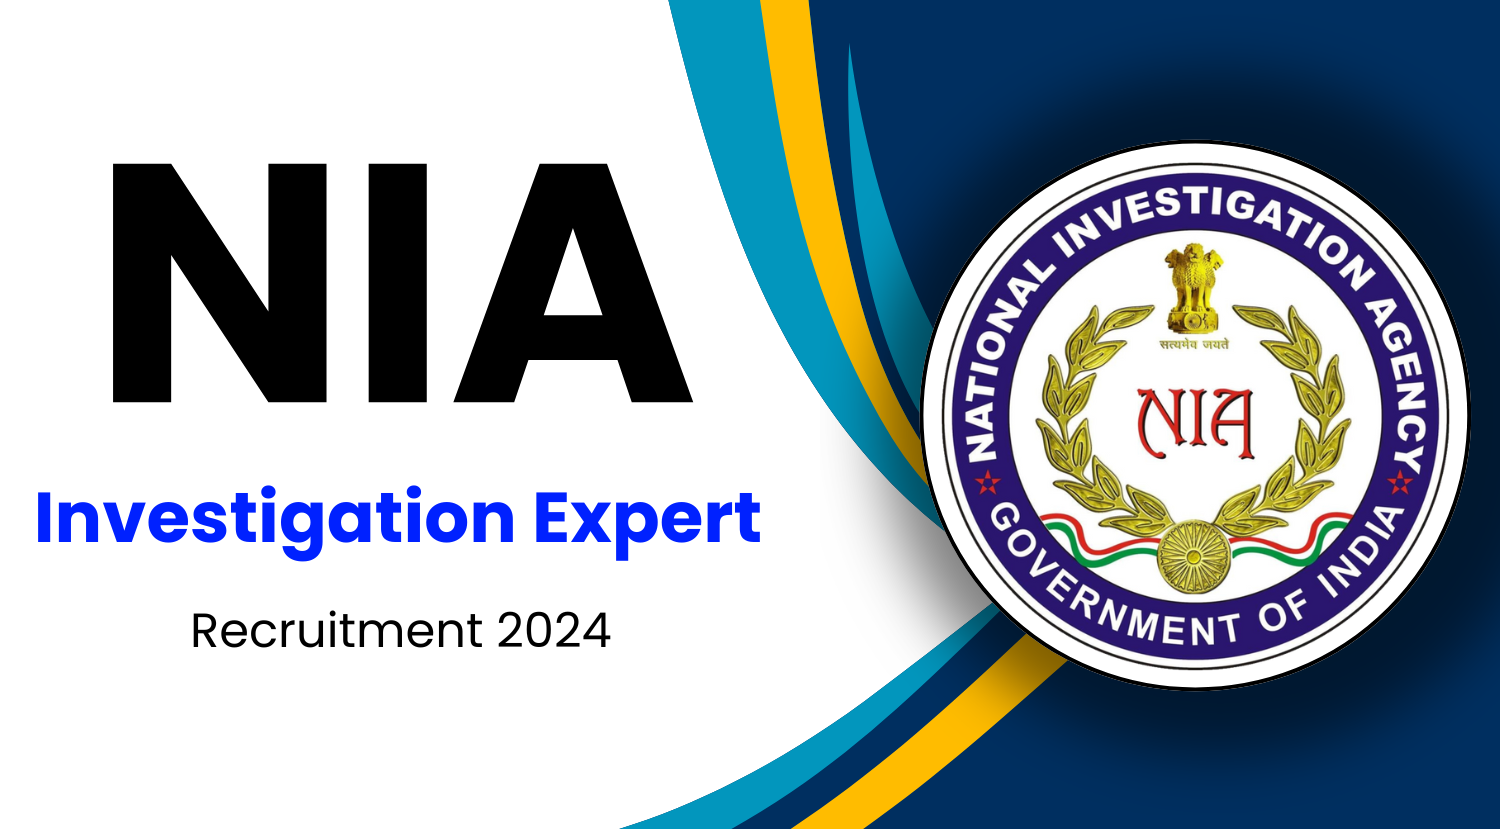 NIA Investigation Expert Recruitment 2024